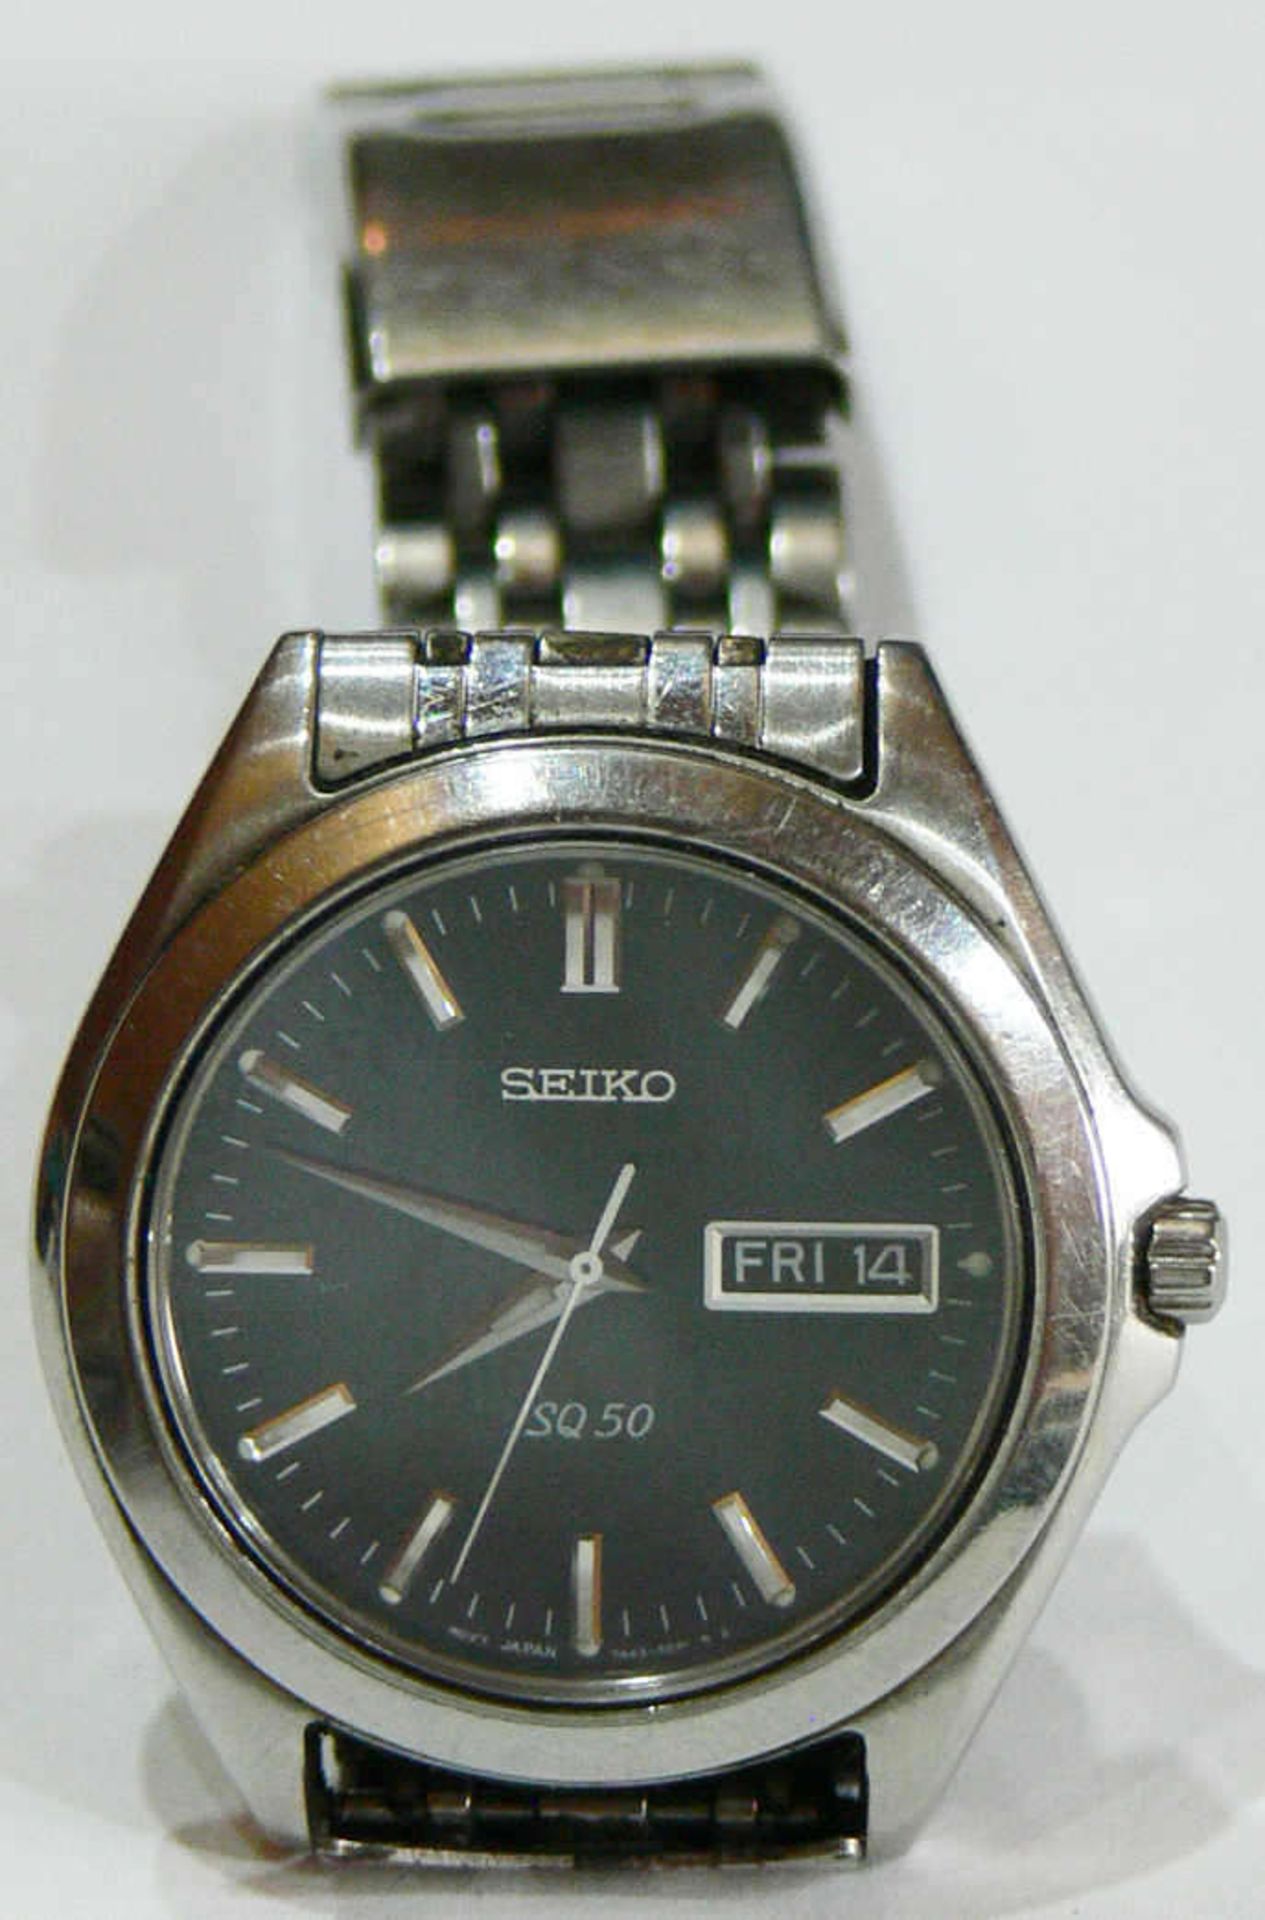 Seiko Herren - Armbanduhr "SQ 50". Blaues Ziffernblatt, Tages- und Datumsanzeige auf der "3".